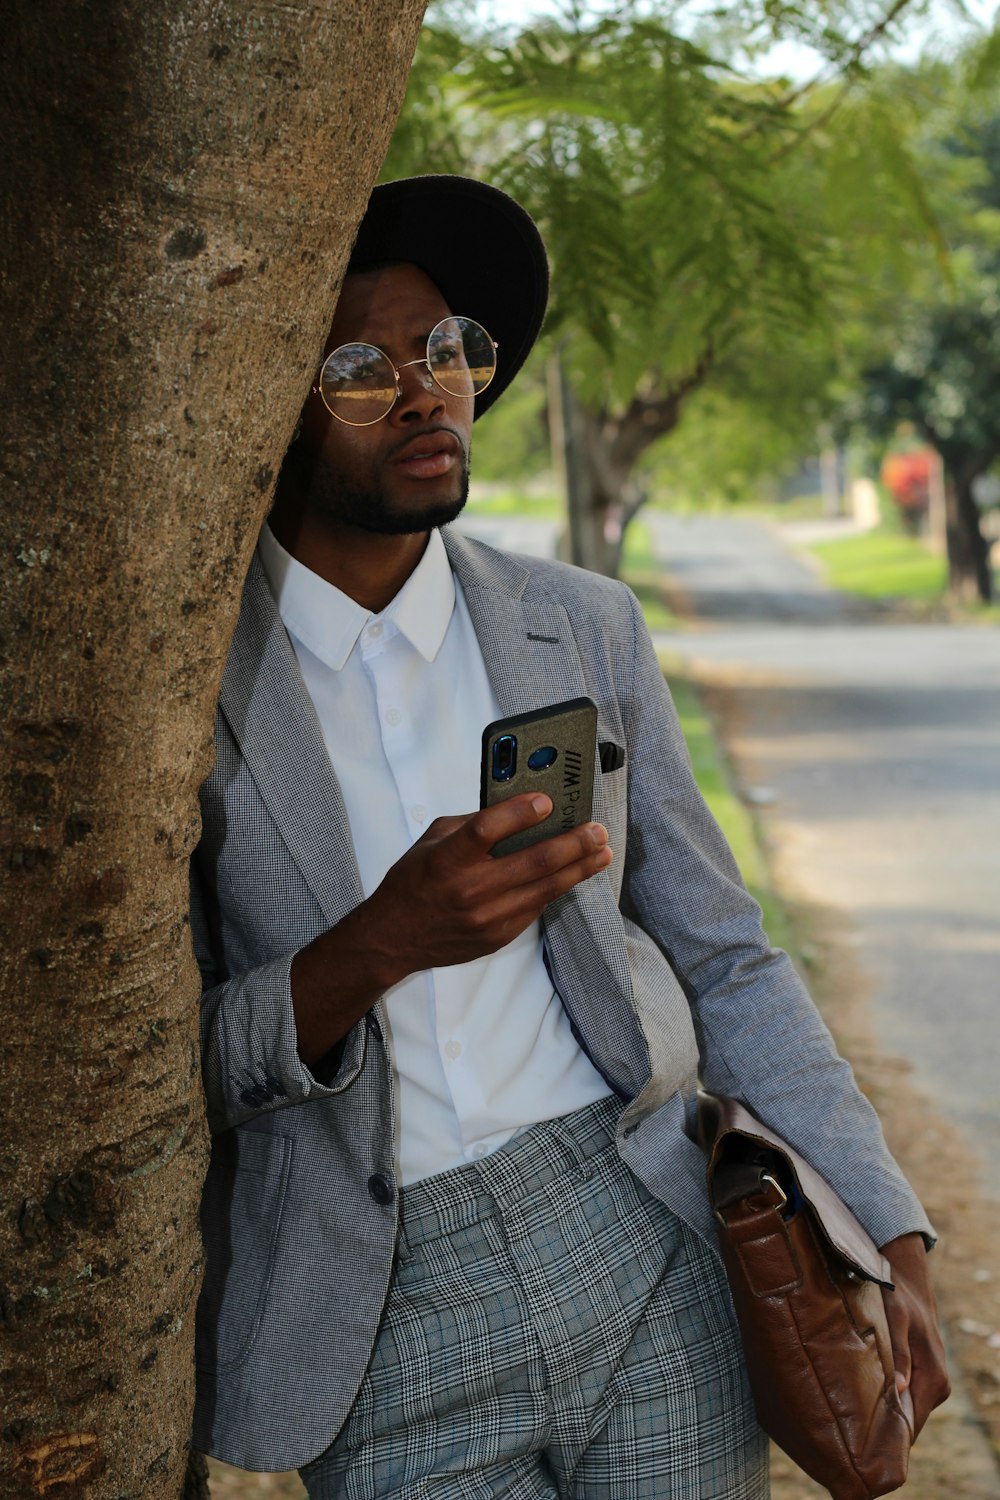 Un homme en costume appuyé contre un arbre regardant son téléphone portable